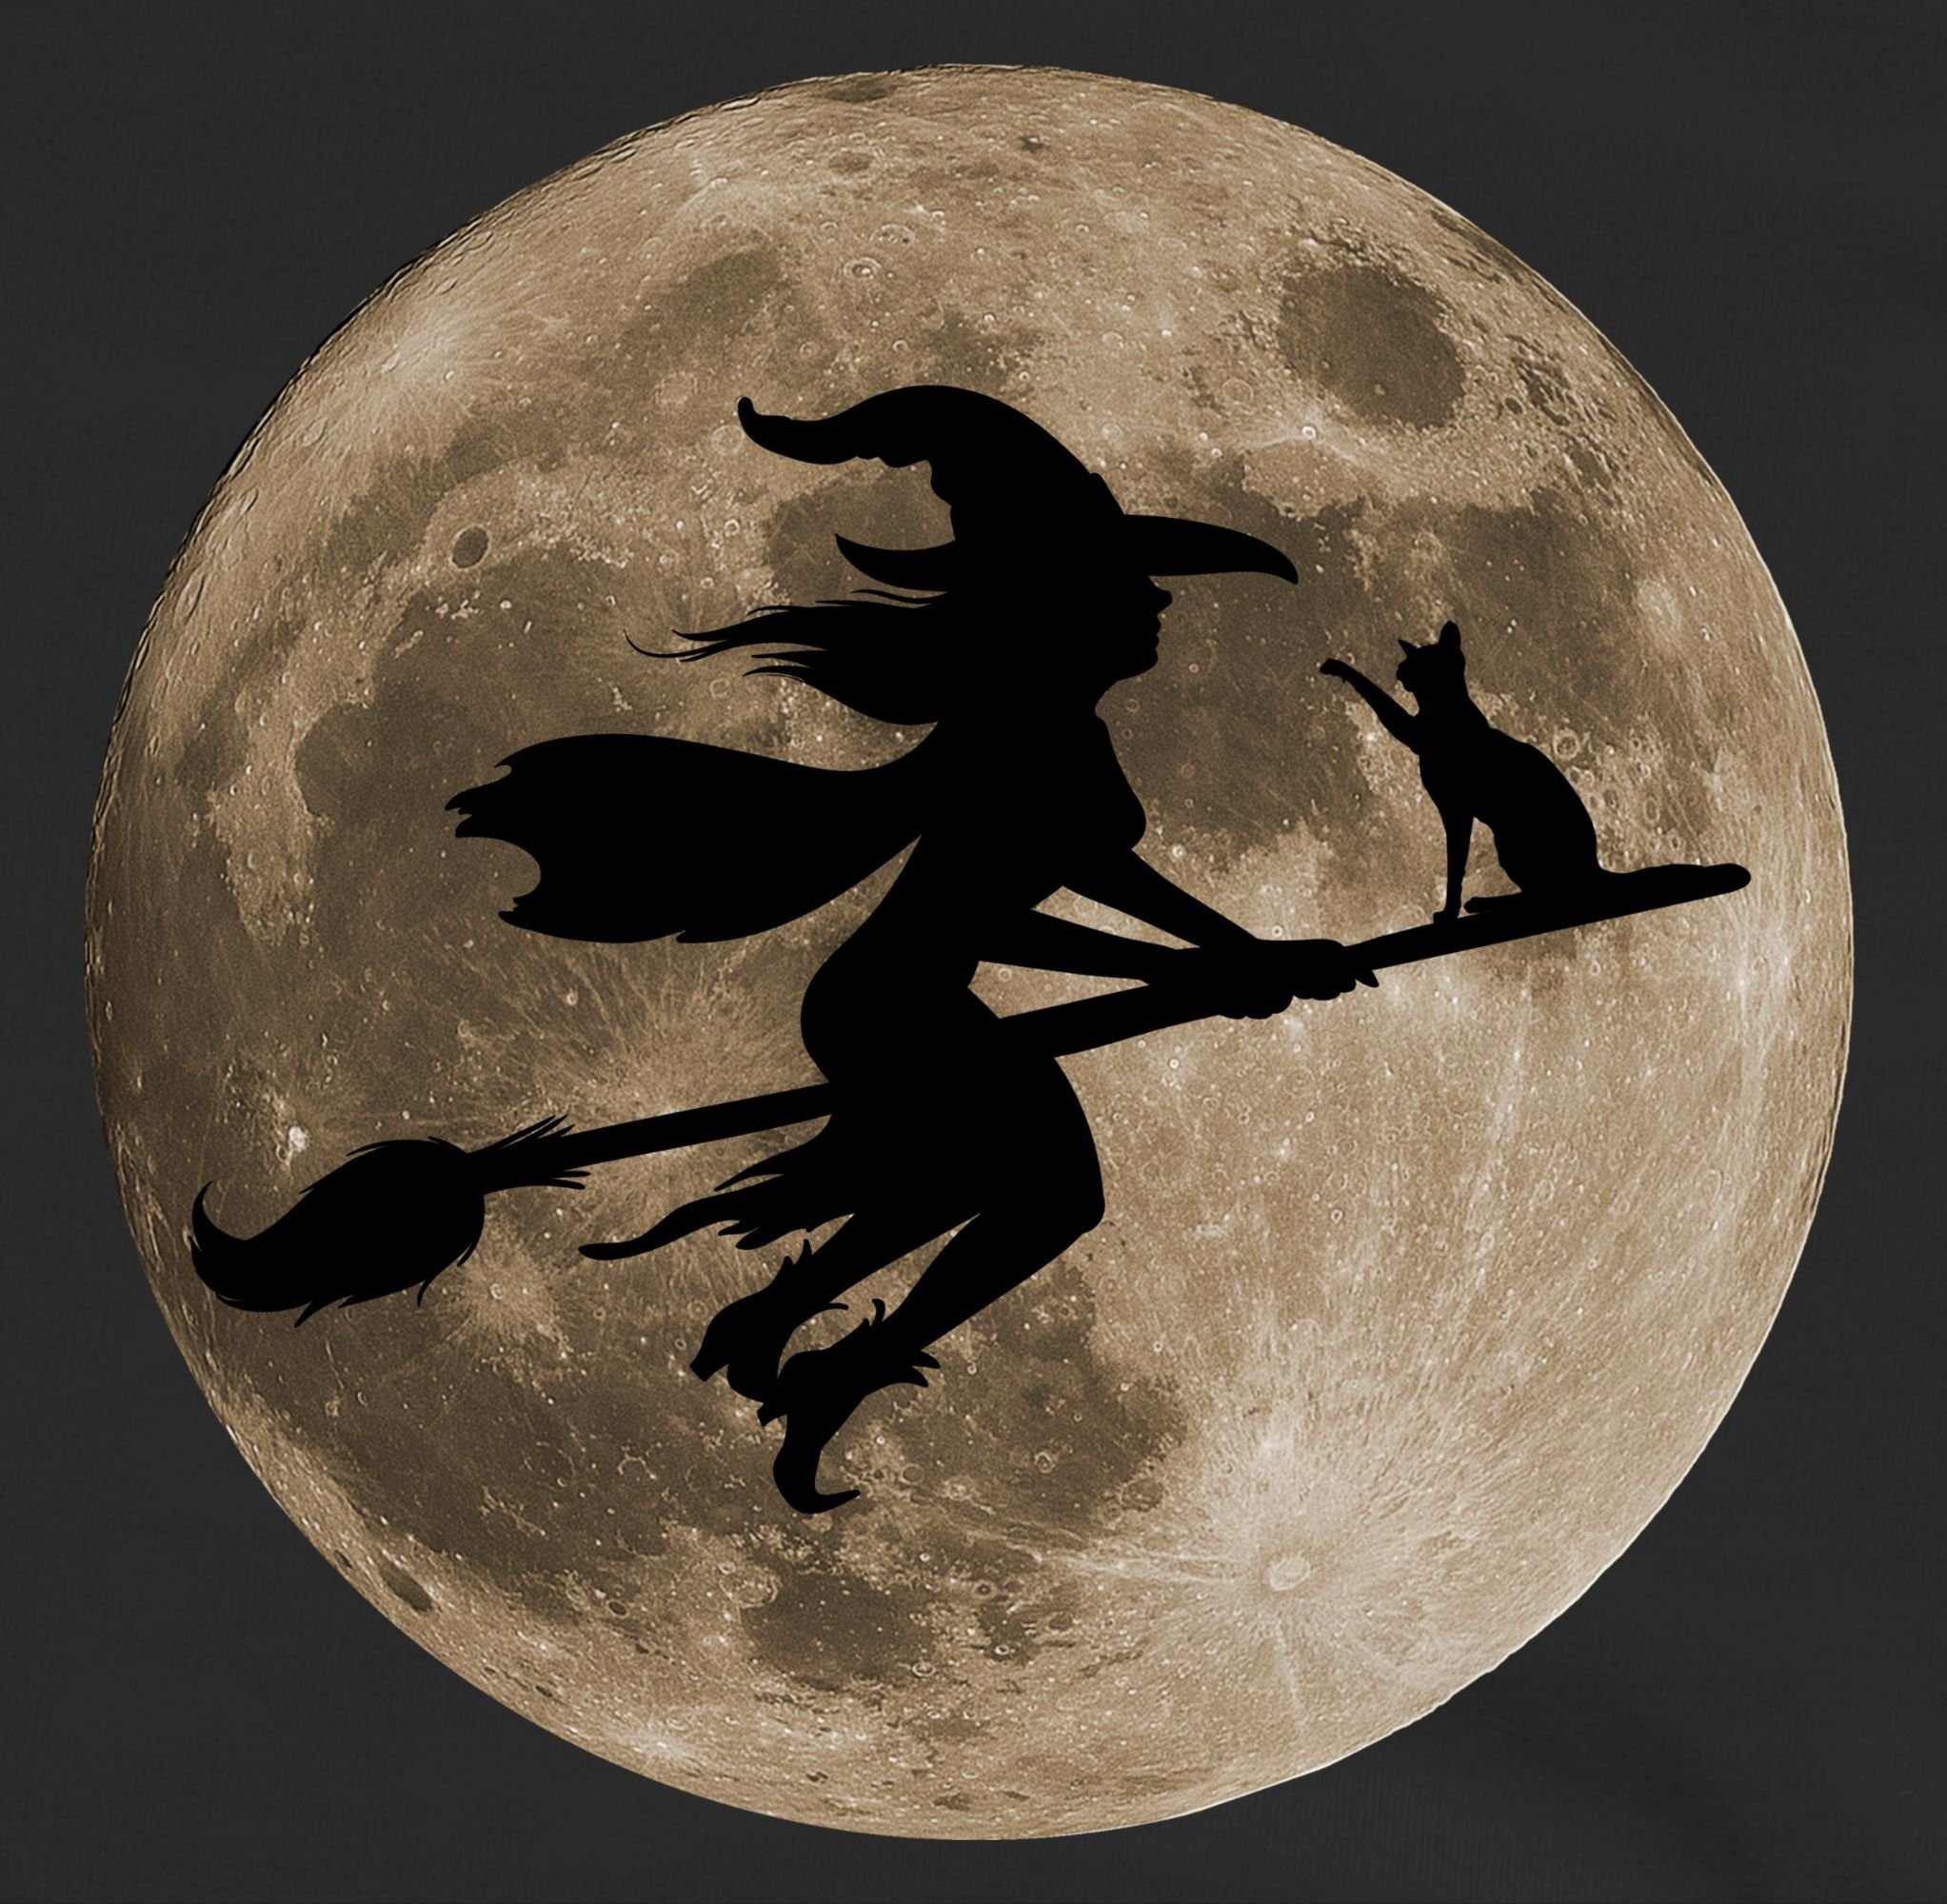 2 Katze Mond Besen Kinder für Hexe Hexen Halloween Witch Kostüme Halloween Shirtracer Schwarz Vollmond Sweatshirt auf